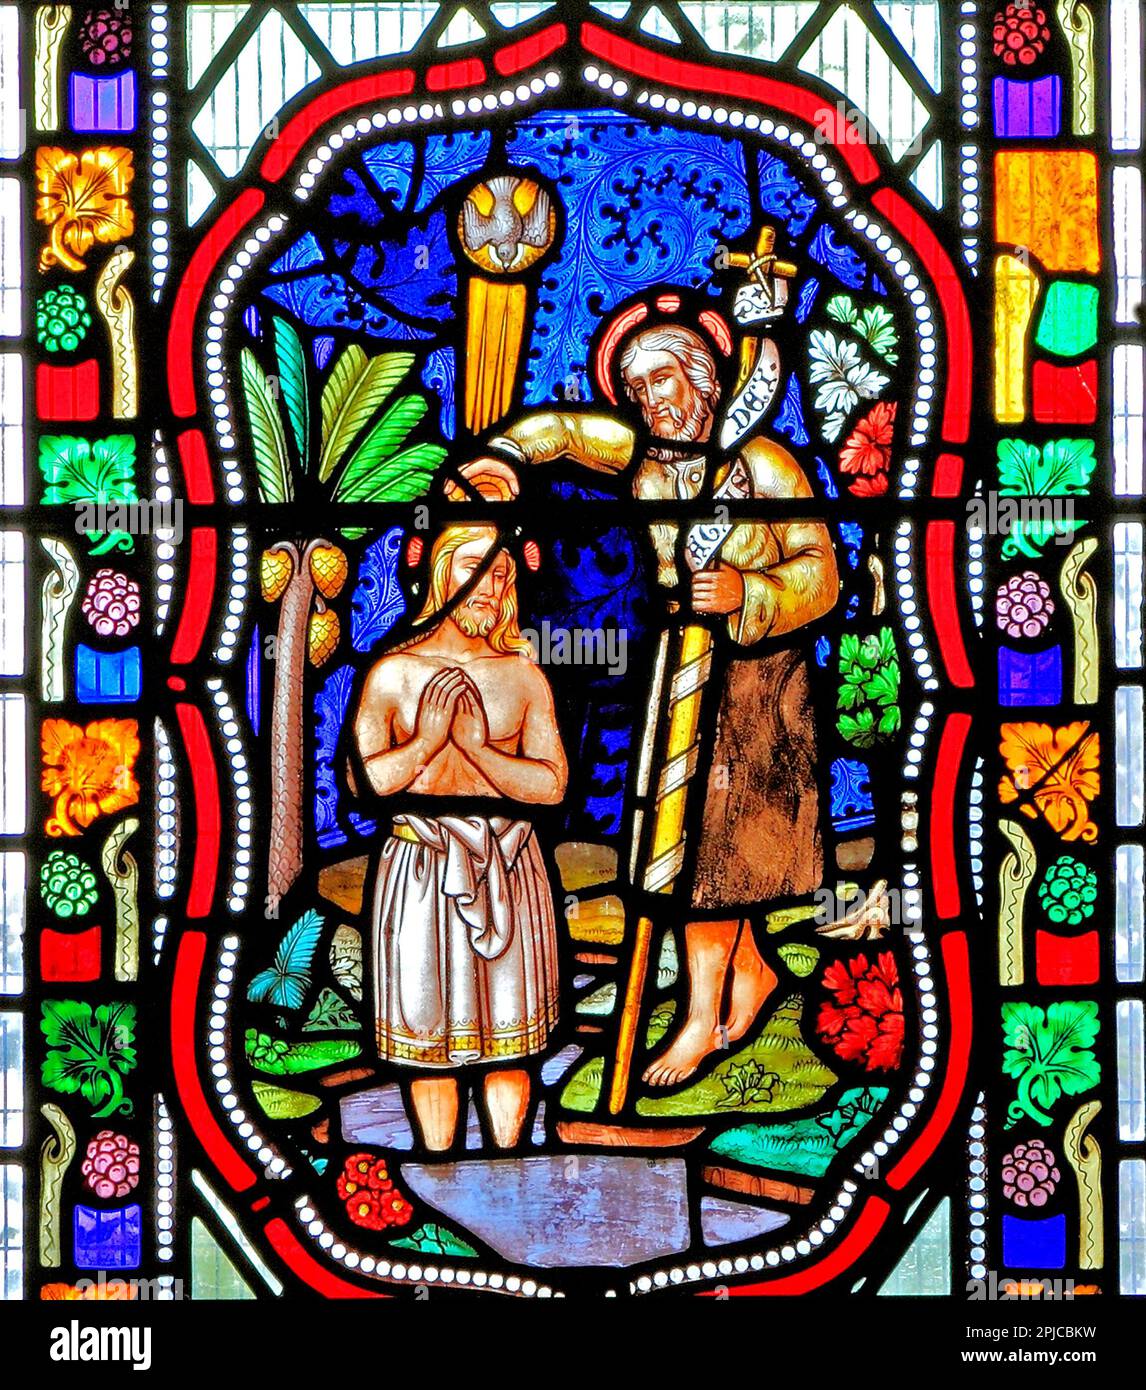 Baptême de Jésus, par Jean-Baptiste, dans le Jourdain, descente de colombes, vitrail, 1860, Fakenham, Norfolk, Angleterre, Royaume-Uni Banque D'Images